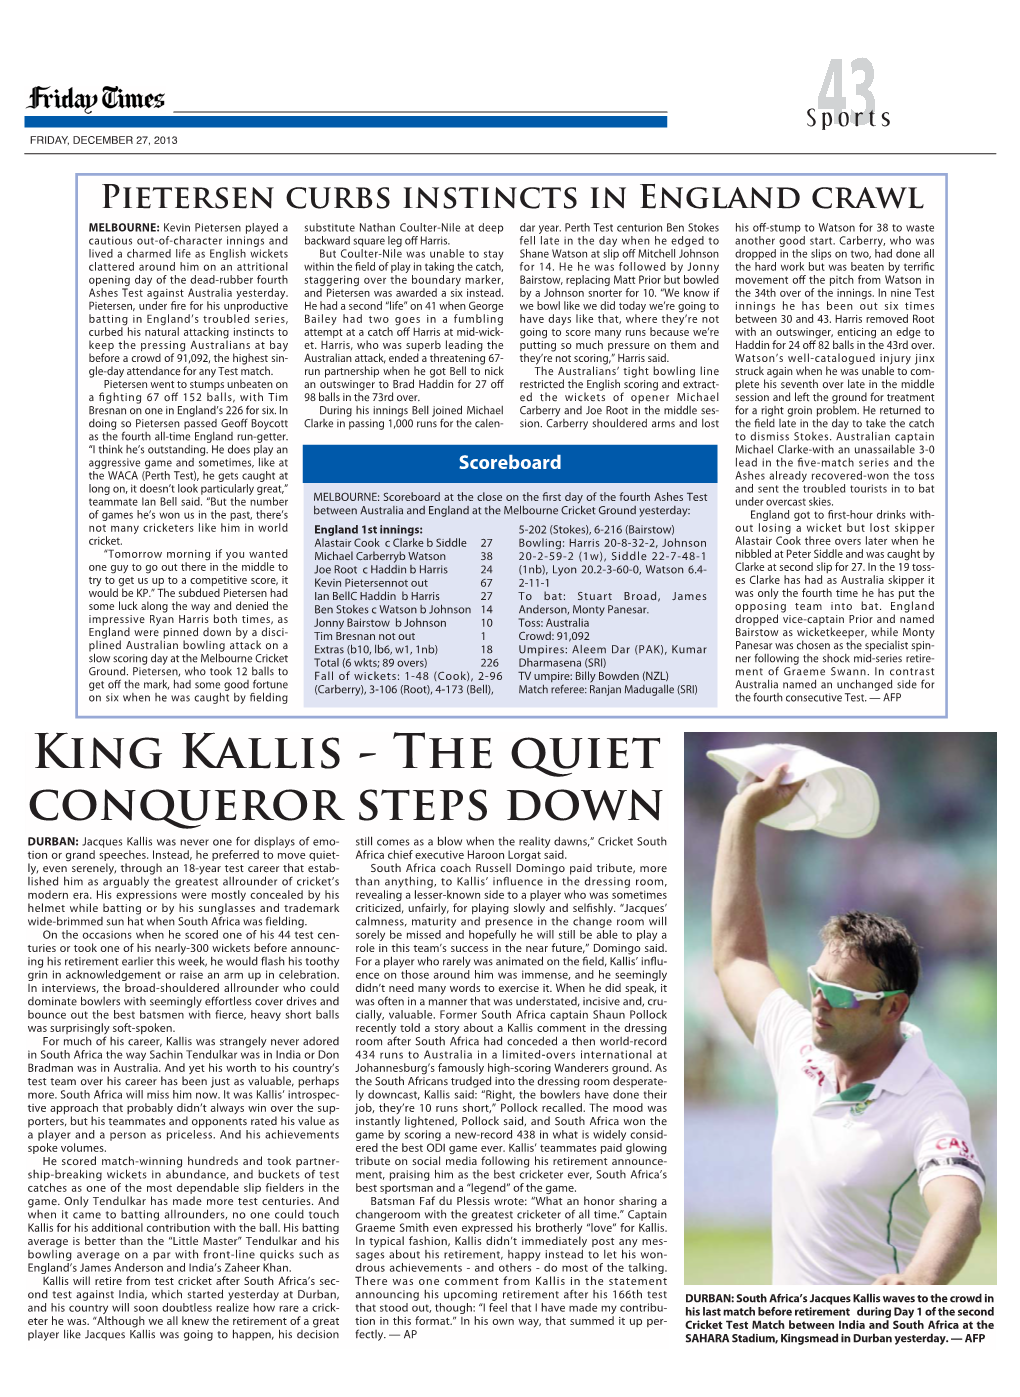 King Kallis - the Quiet Conqueror Steps Down